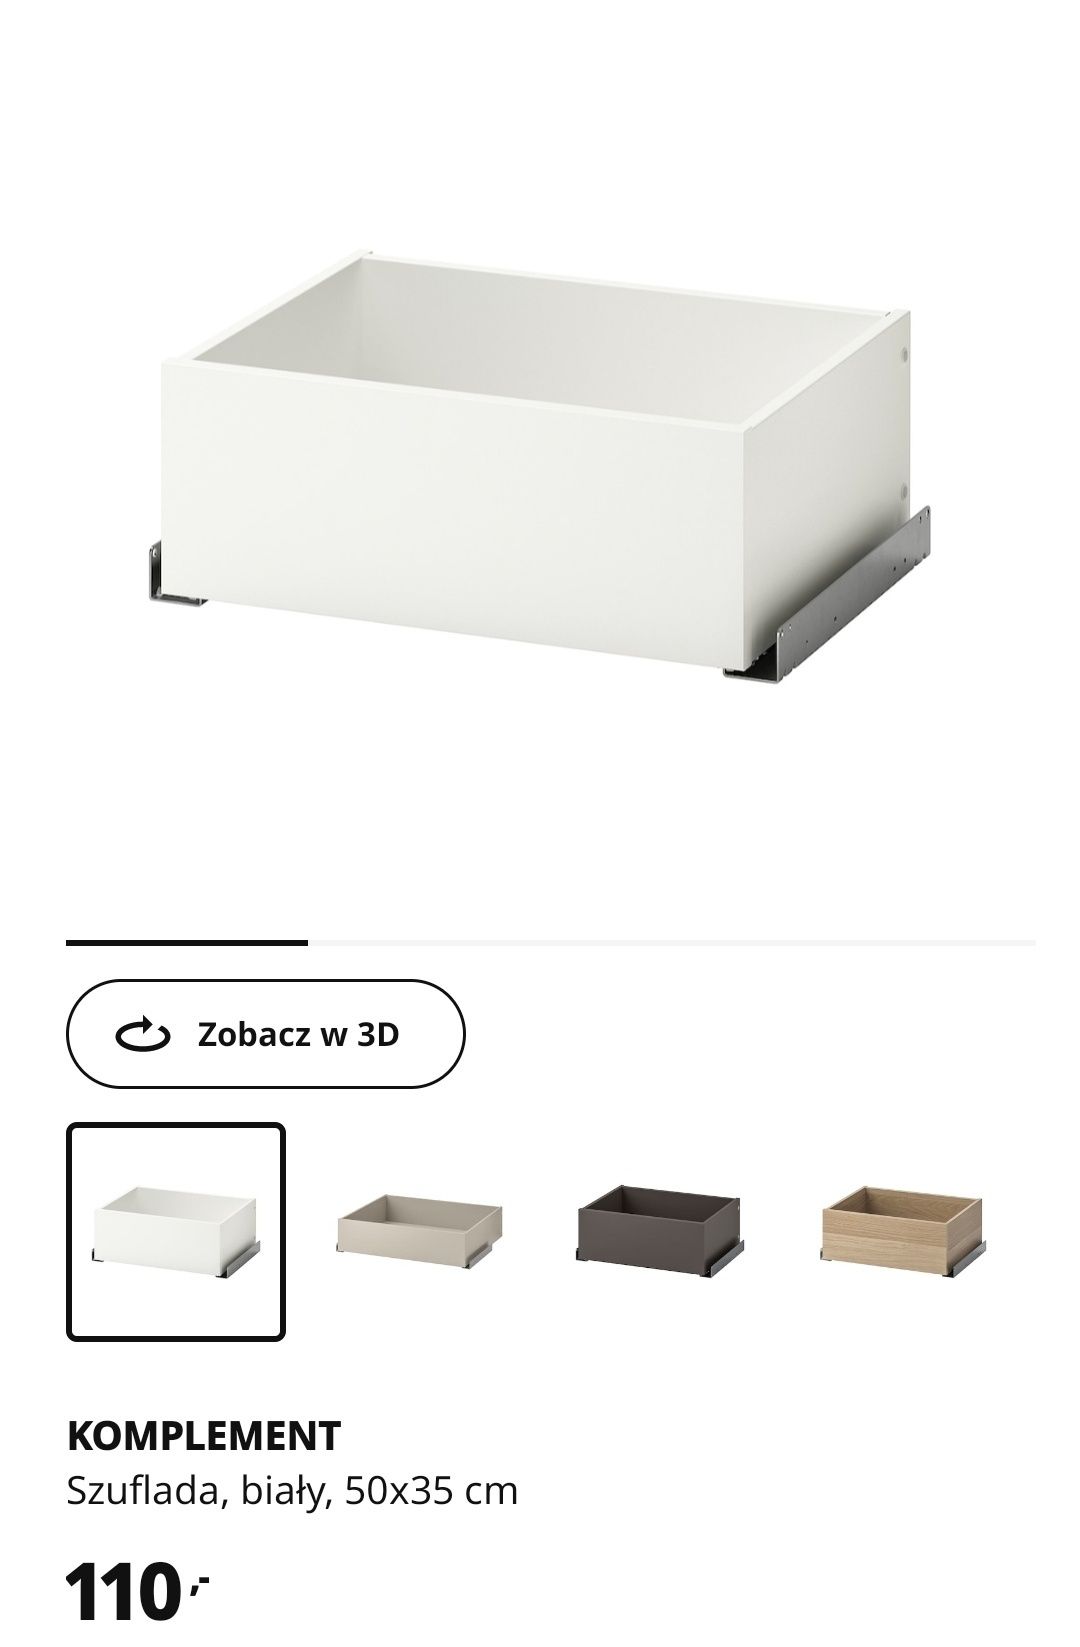 NOWA szuflada do szafy Ikea Pax - wymiary 50x35
Nu